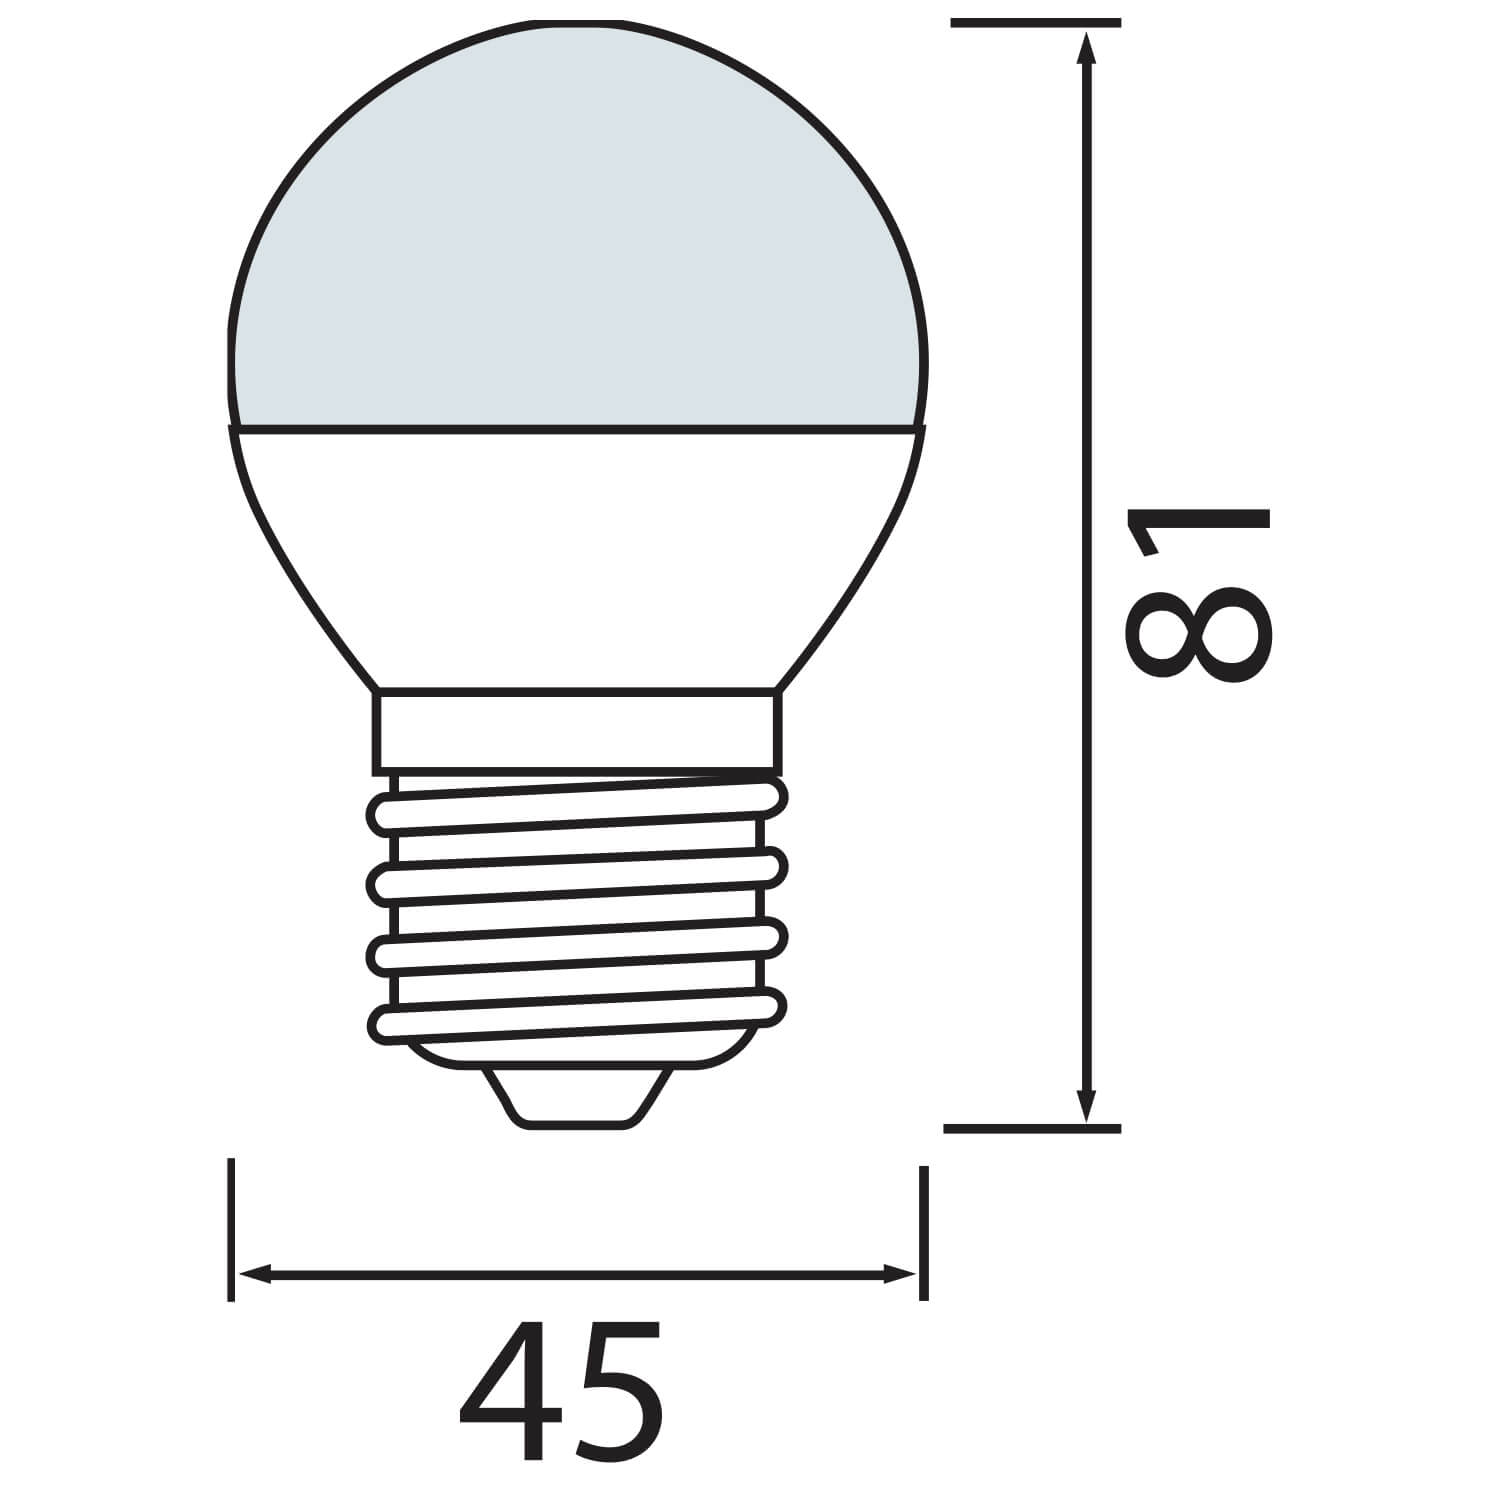 ELİT 6 (E27) - 6W LED AMPUL -D